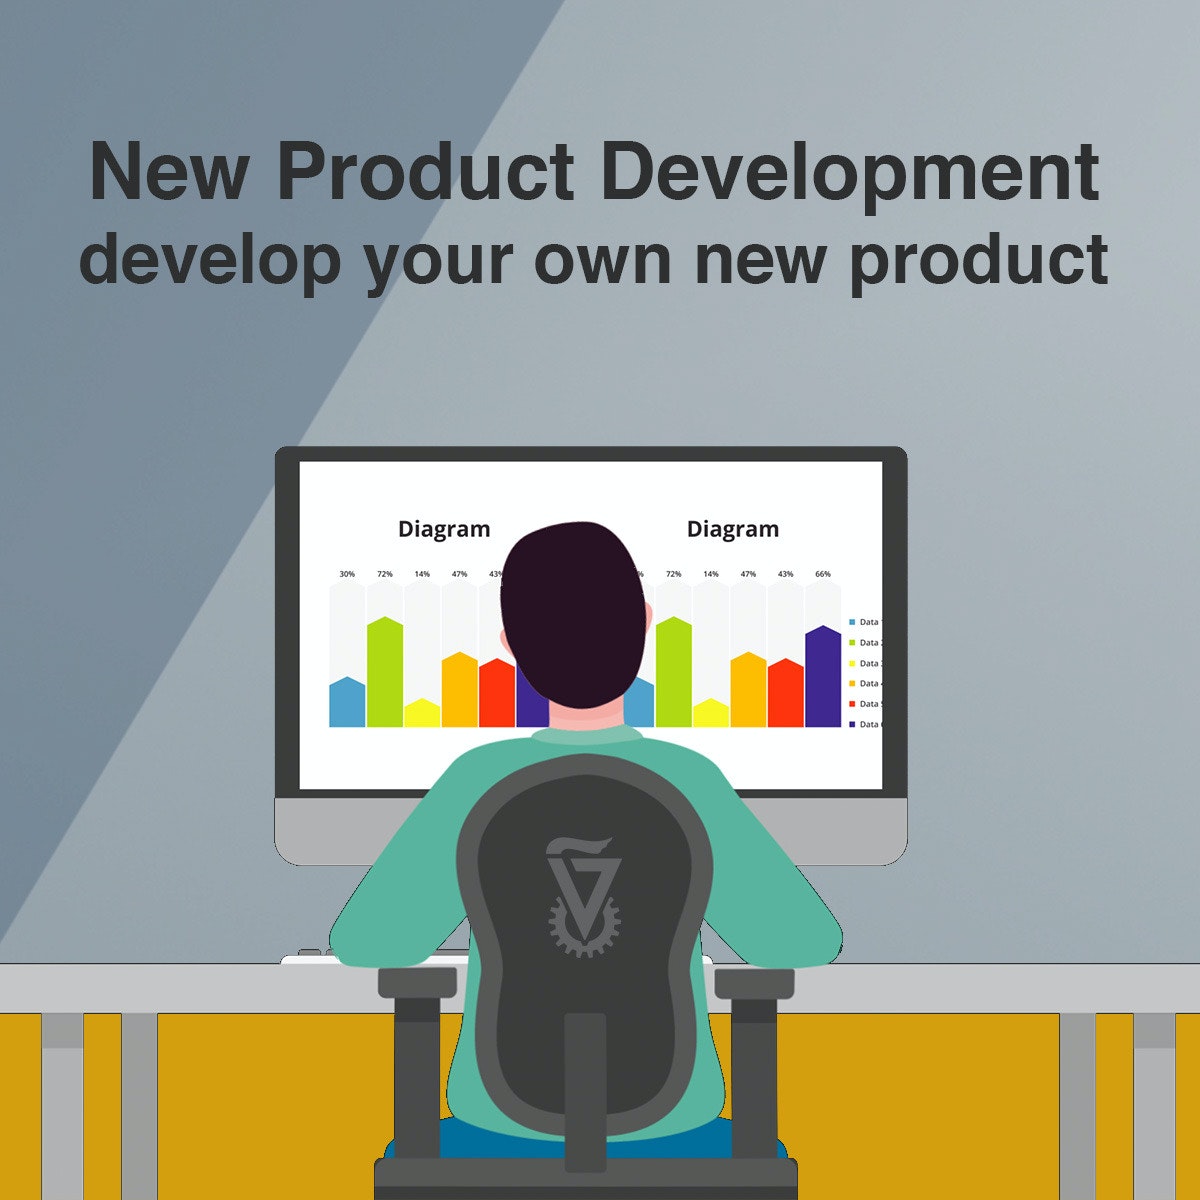 توسعه محصول جدید - محصول جدید خود را توسعه دهید